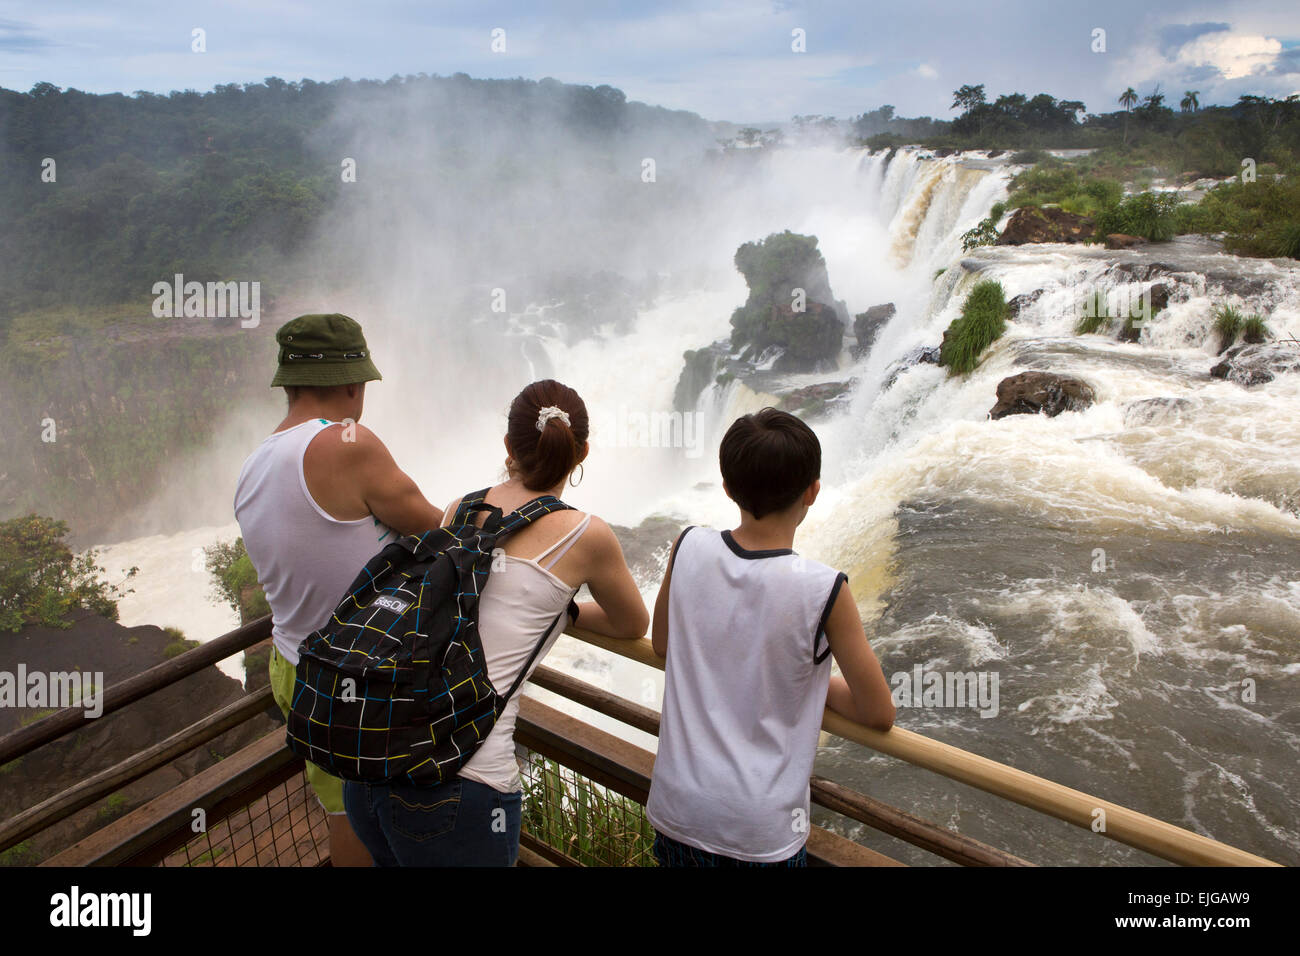 L'Argentine, Iguazu, touristes profitant de la vue des chutes d'eau après de fortes pluies Banque D'Images